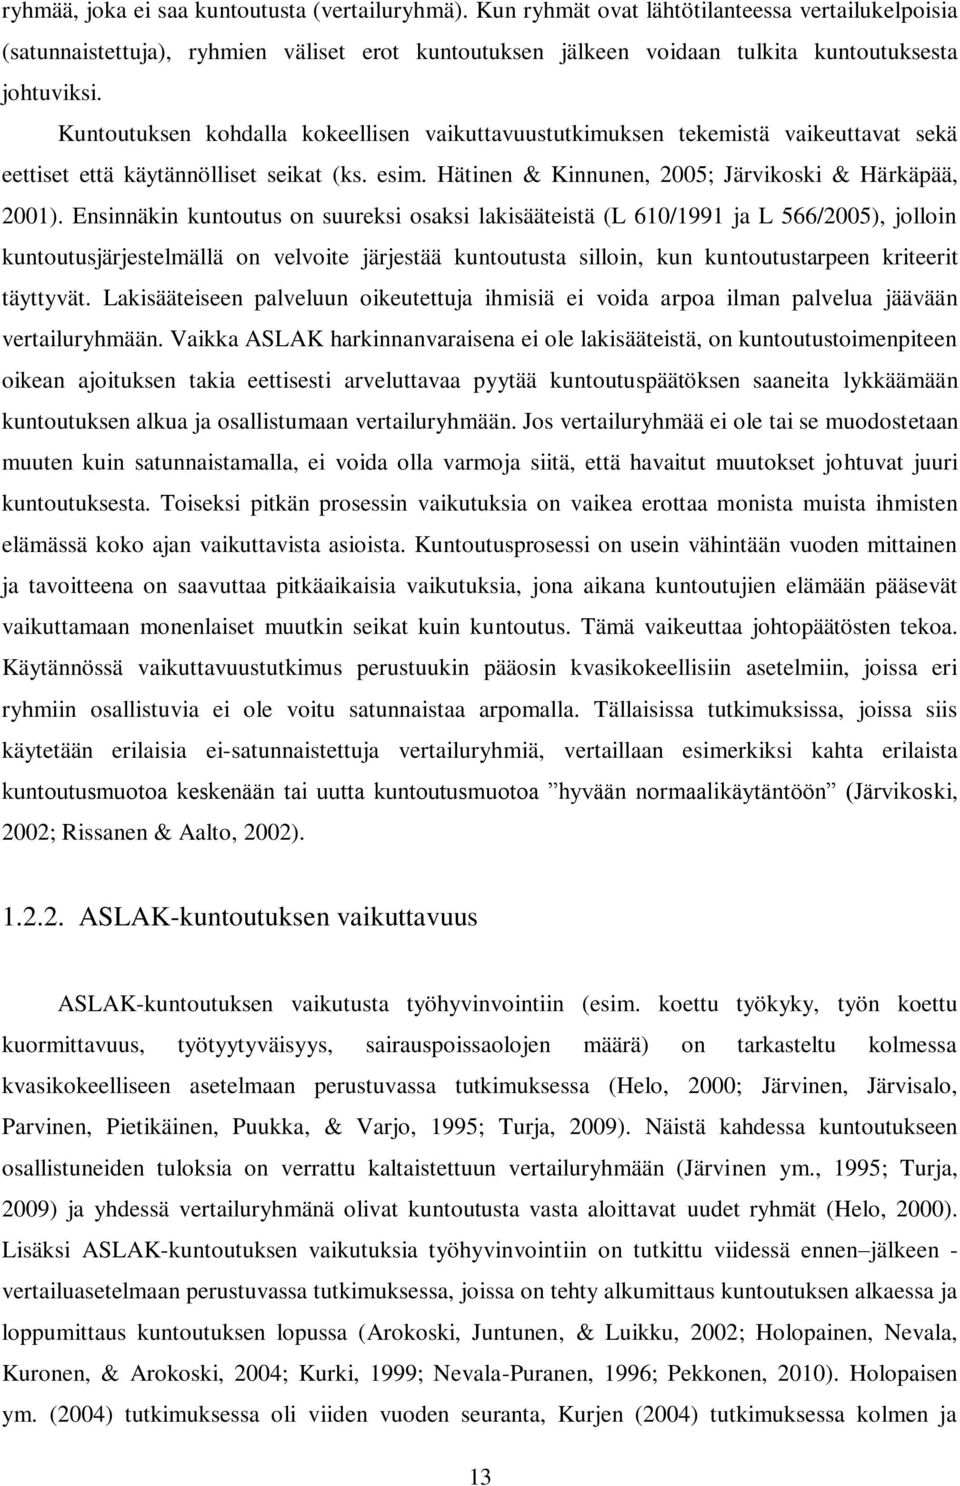 Kuntoutuksen kohdalla kokeellisen vaikuttavuustutkimuksen tekemistä vaikeuttavat sekä eettiset että käytännölliset seikat (ks. esim. Hätinen & Kinnunen, 2005; Järvikoski & Härkäpää, 2001).